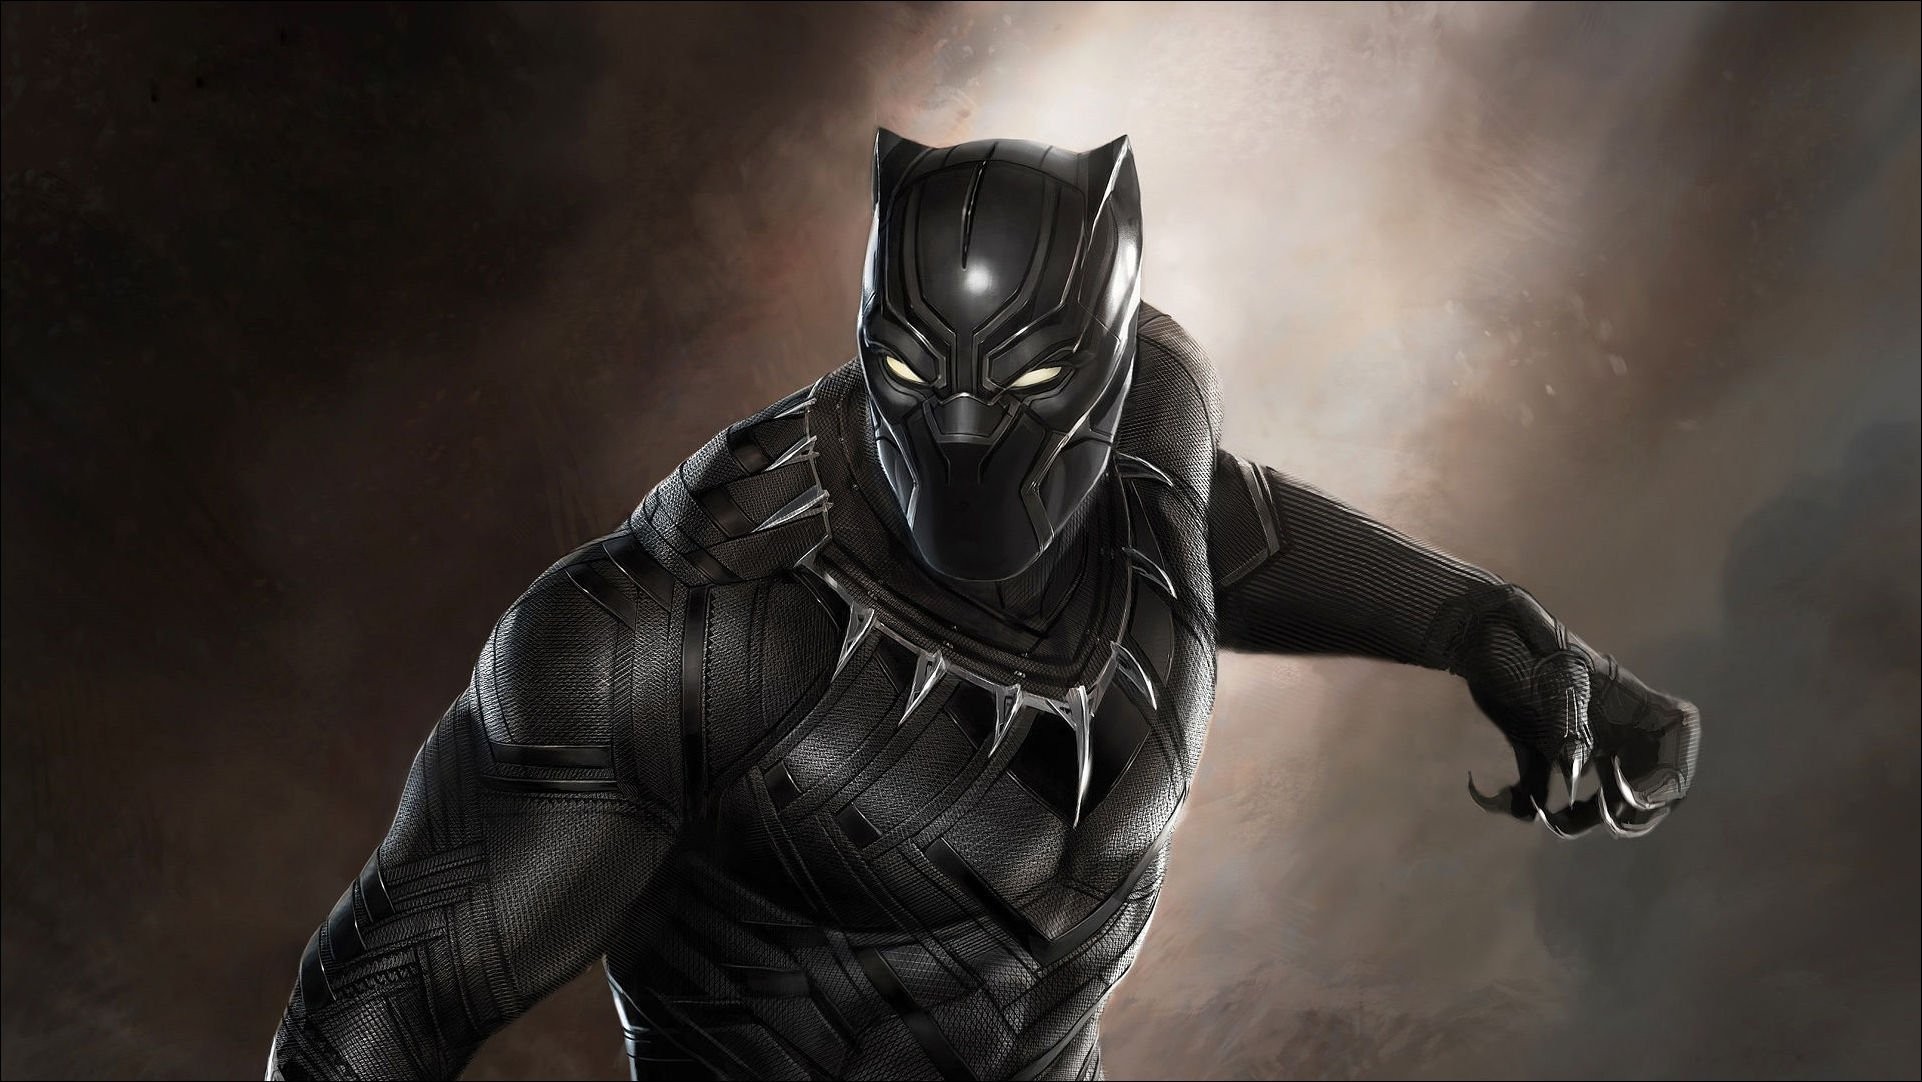 “Black Panther” кино "Шилдэг кино" номинацид нэр дэвшсэн Marvel-ийн супер баатруудын тухайн анхны бүтээл боллоо.